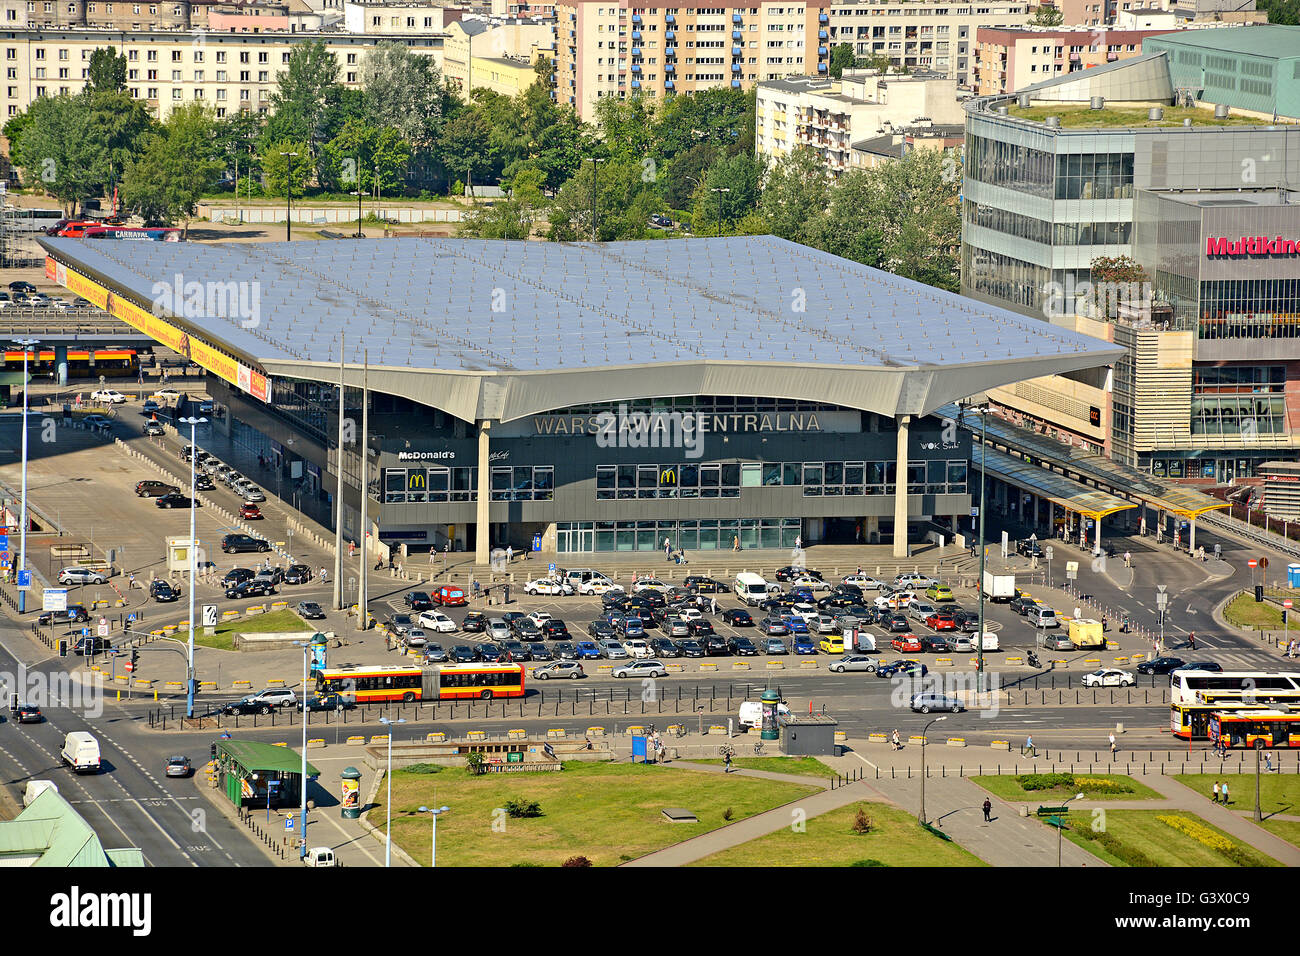 aerial view on Warszawa Centalna railway station Warsaw Poland Stock Photo